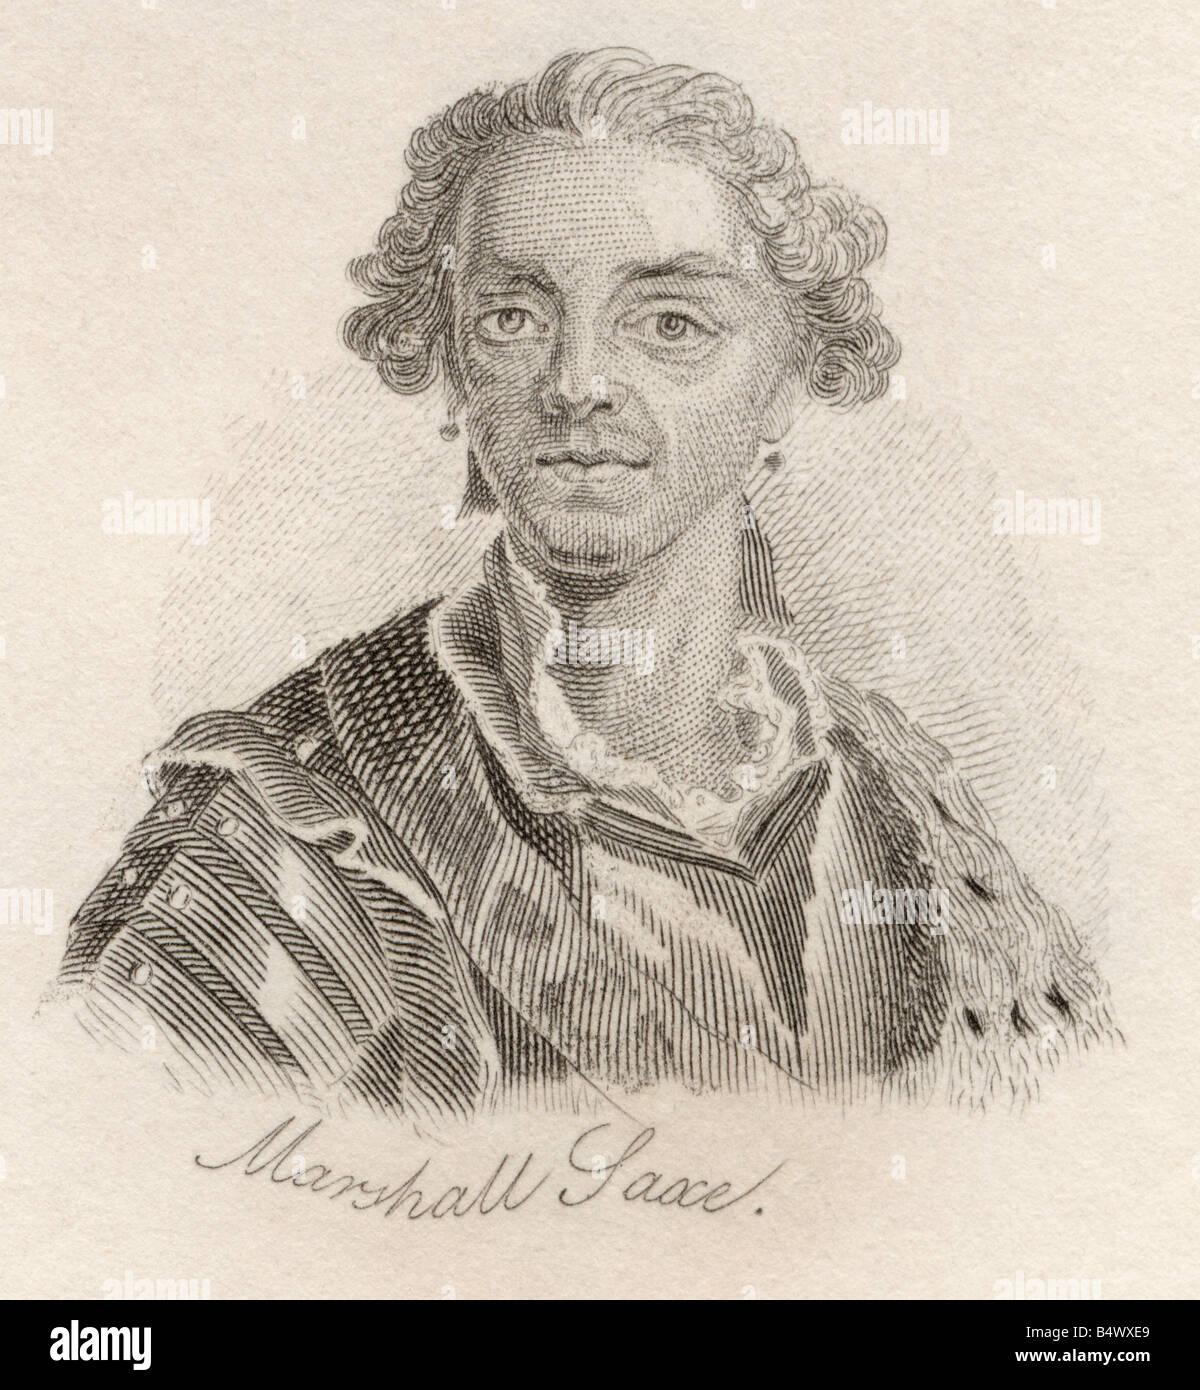 Hermann Maurice Saxe, Graf von Sachsen, 1696 - 1750. Marschall von Frankreich. Aus dem Buch Crabbs Historical Dictionary, veröffentlicht 1825. Stockfoto